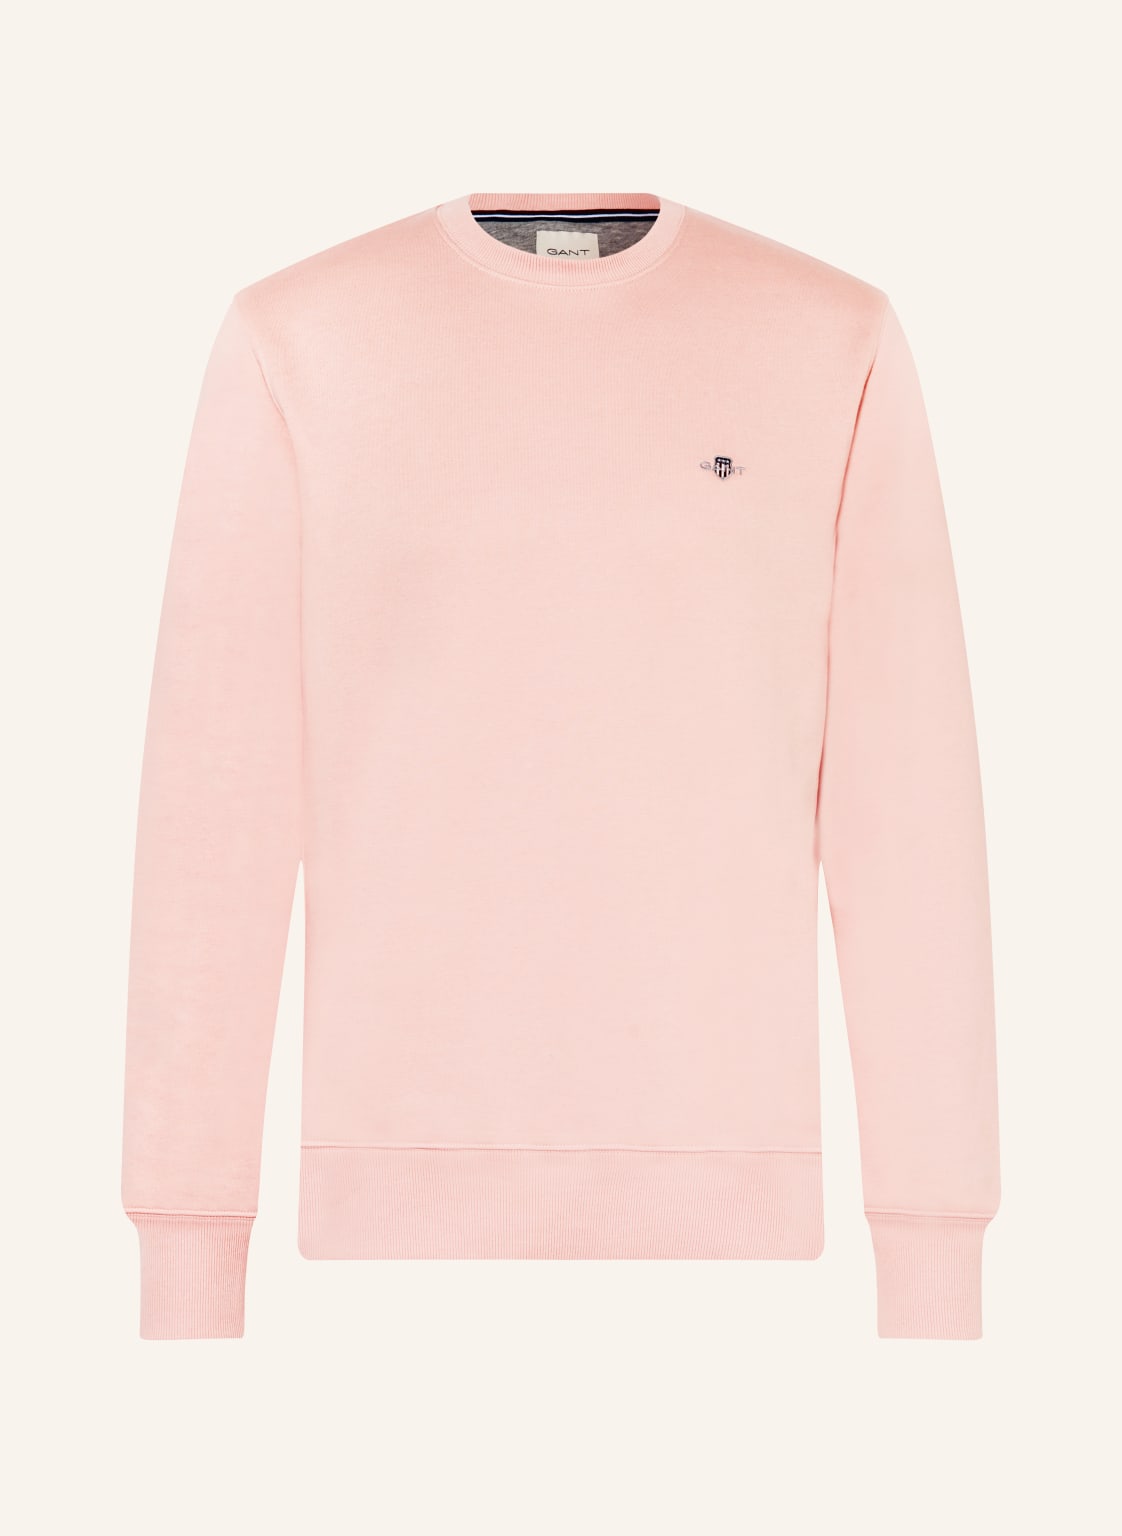 Gant Sweatshirt pink von Gant